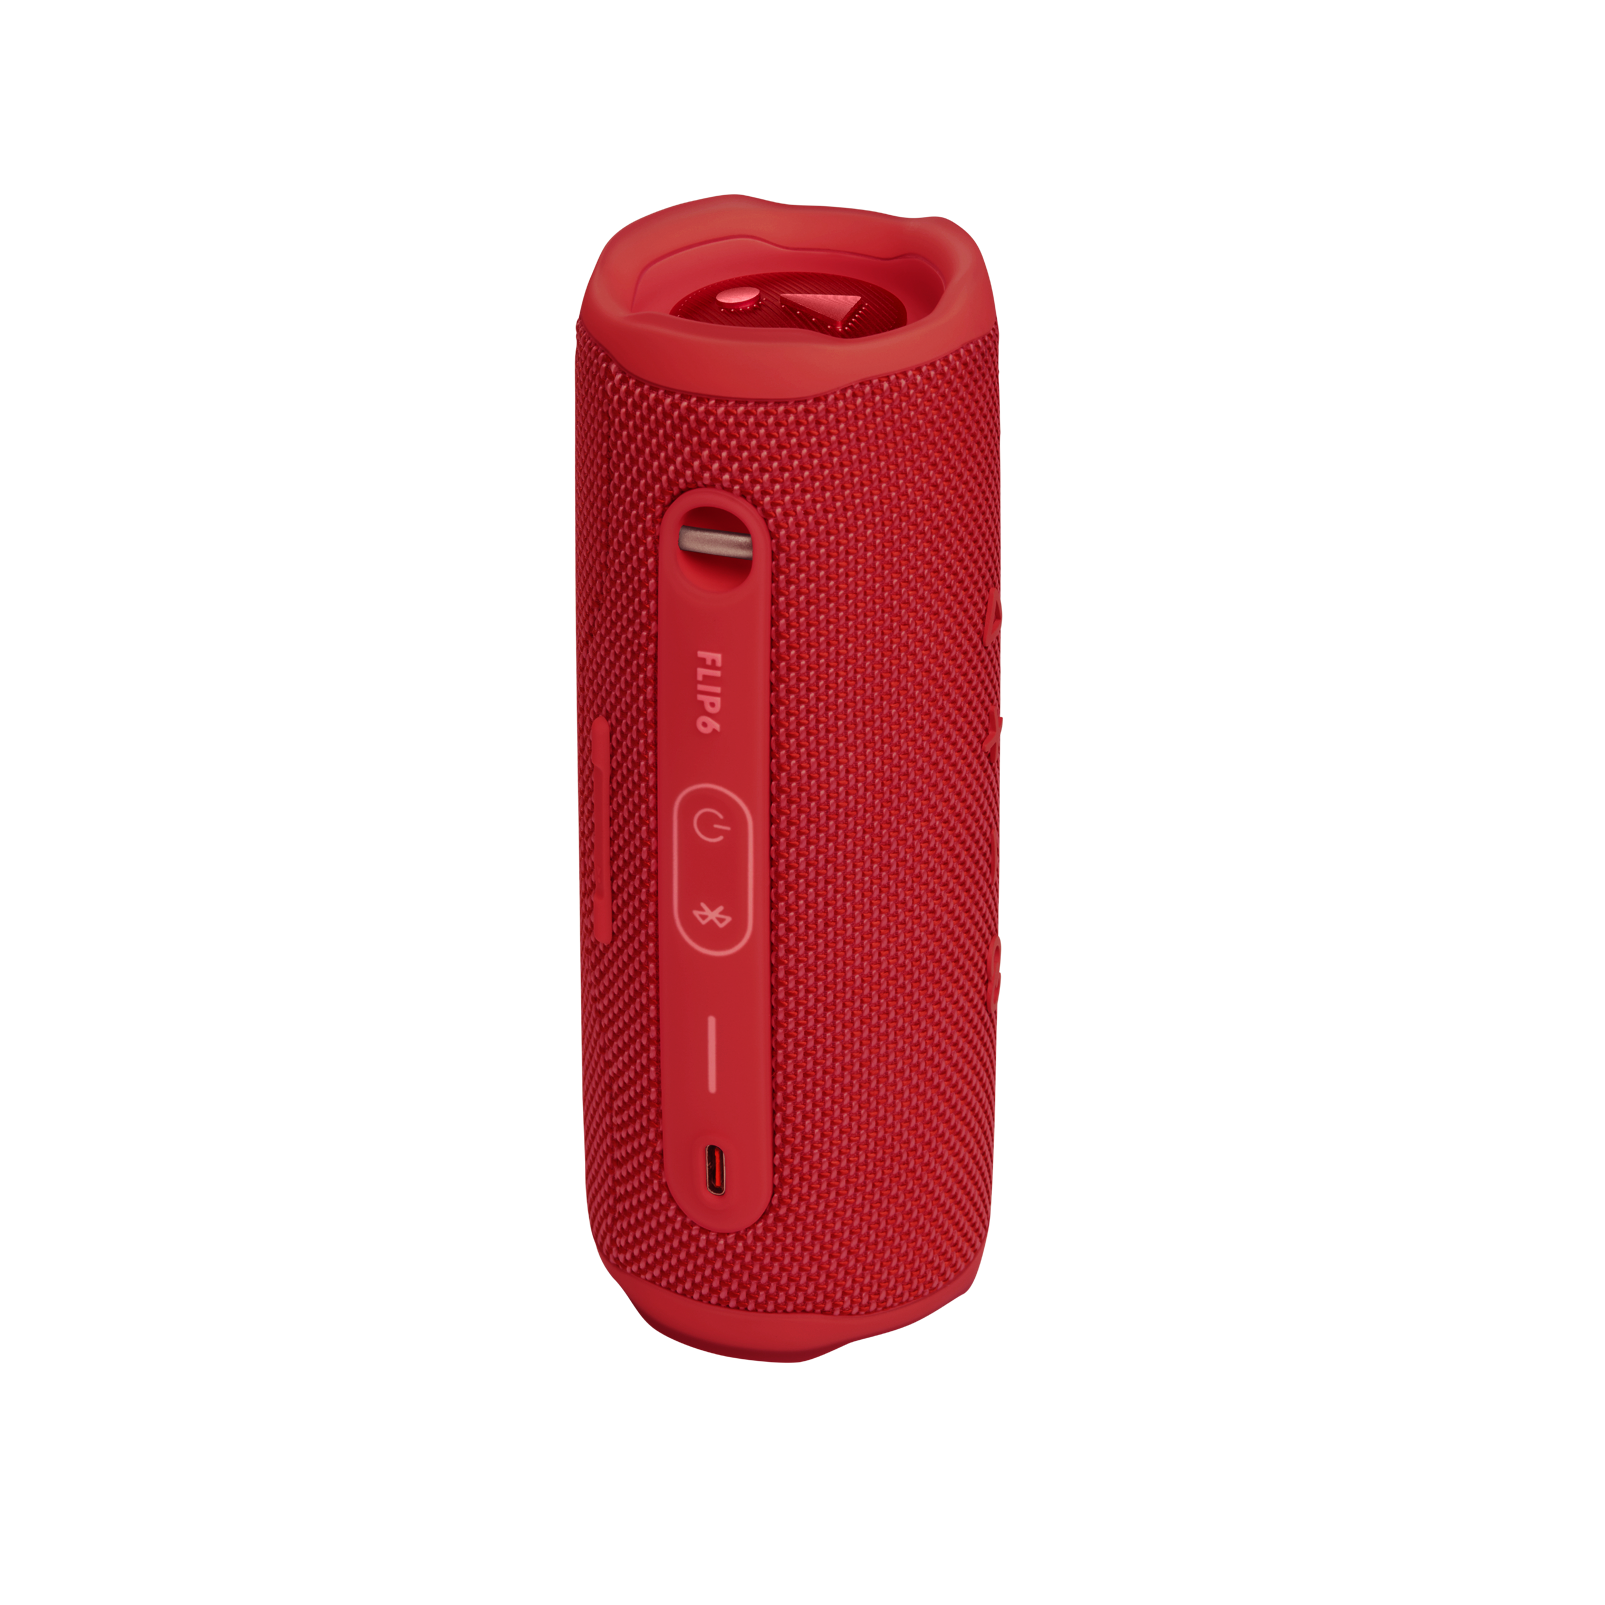 JBL FLIP6 Waterproof and Dustproof Portable Bluetooth Speaker Red